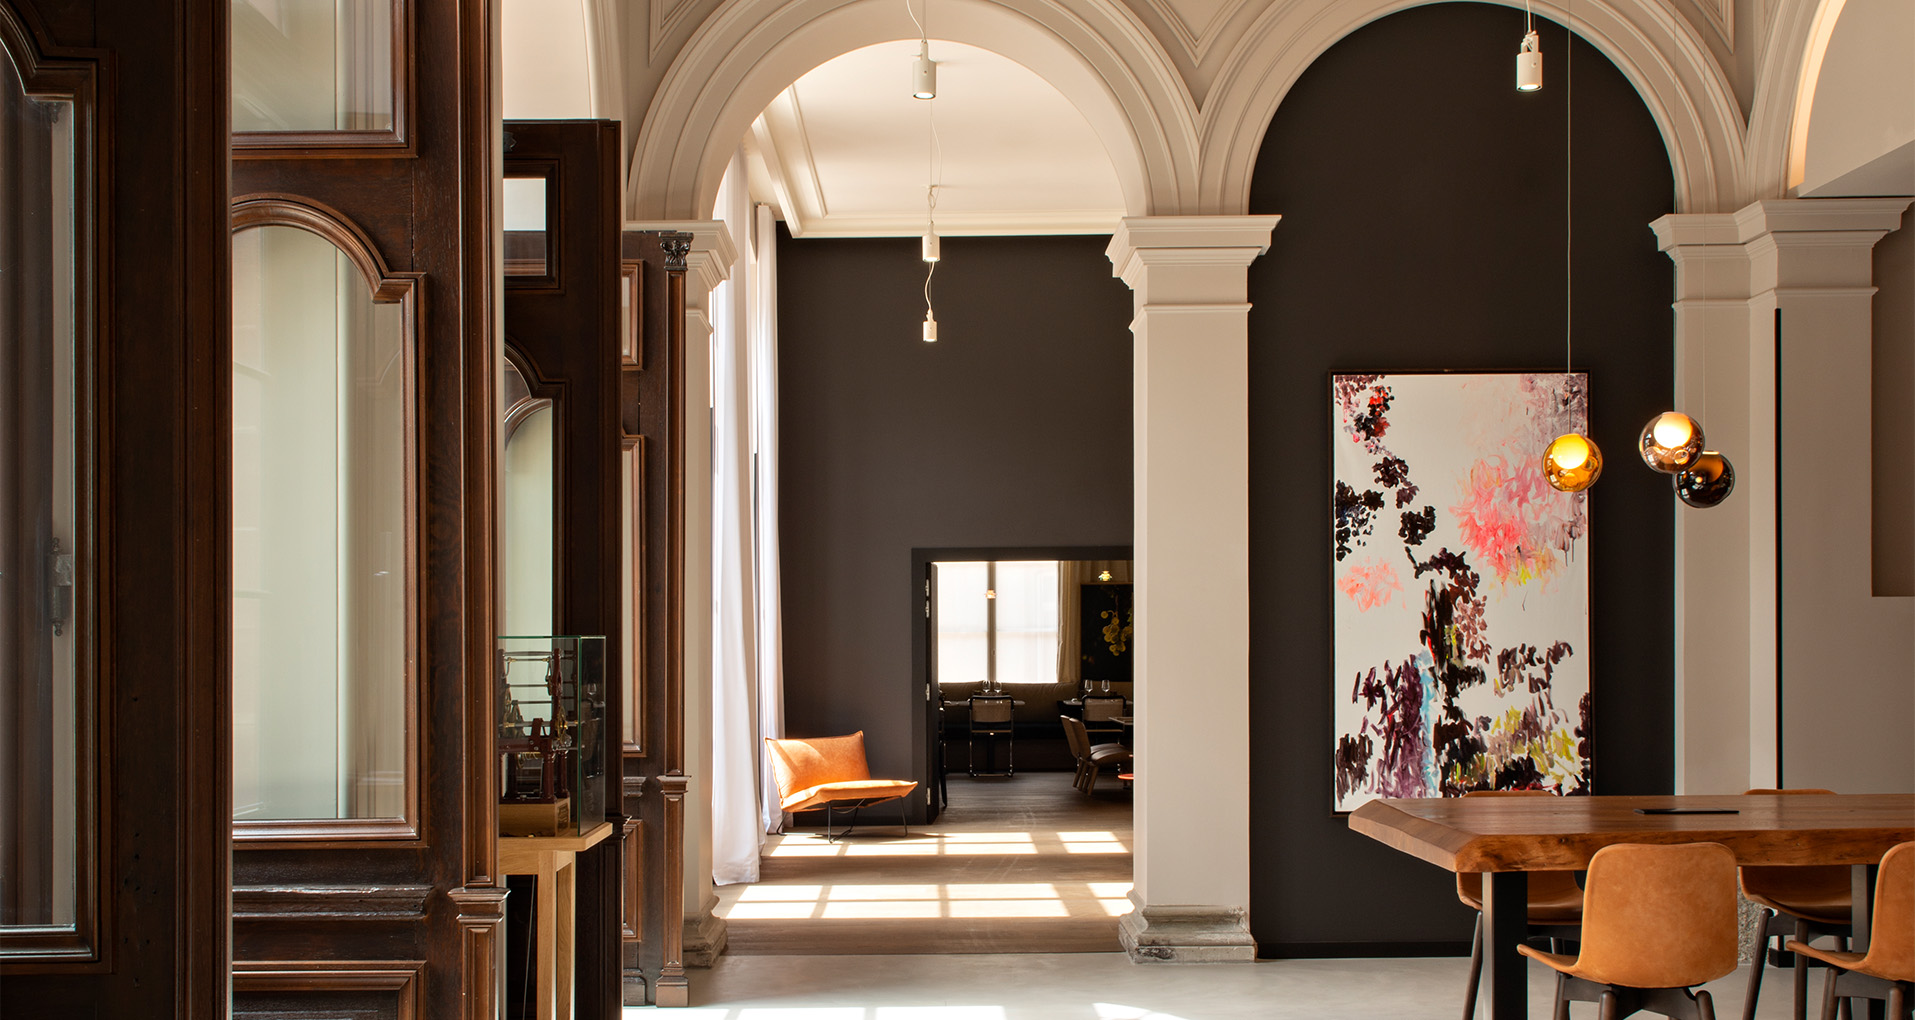 Lobby accueil de l'hôtel leonor strasbourg, france, hotel lifestyle de luxe désigné par le studio d'architecture d'intérieur jean-philippe nuel, rénovation, réhabilitation, décoration d'intérieur, hôtel 4 étoiles